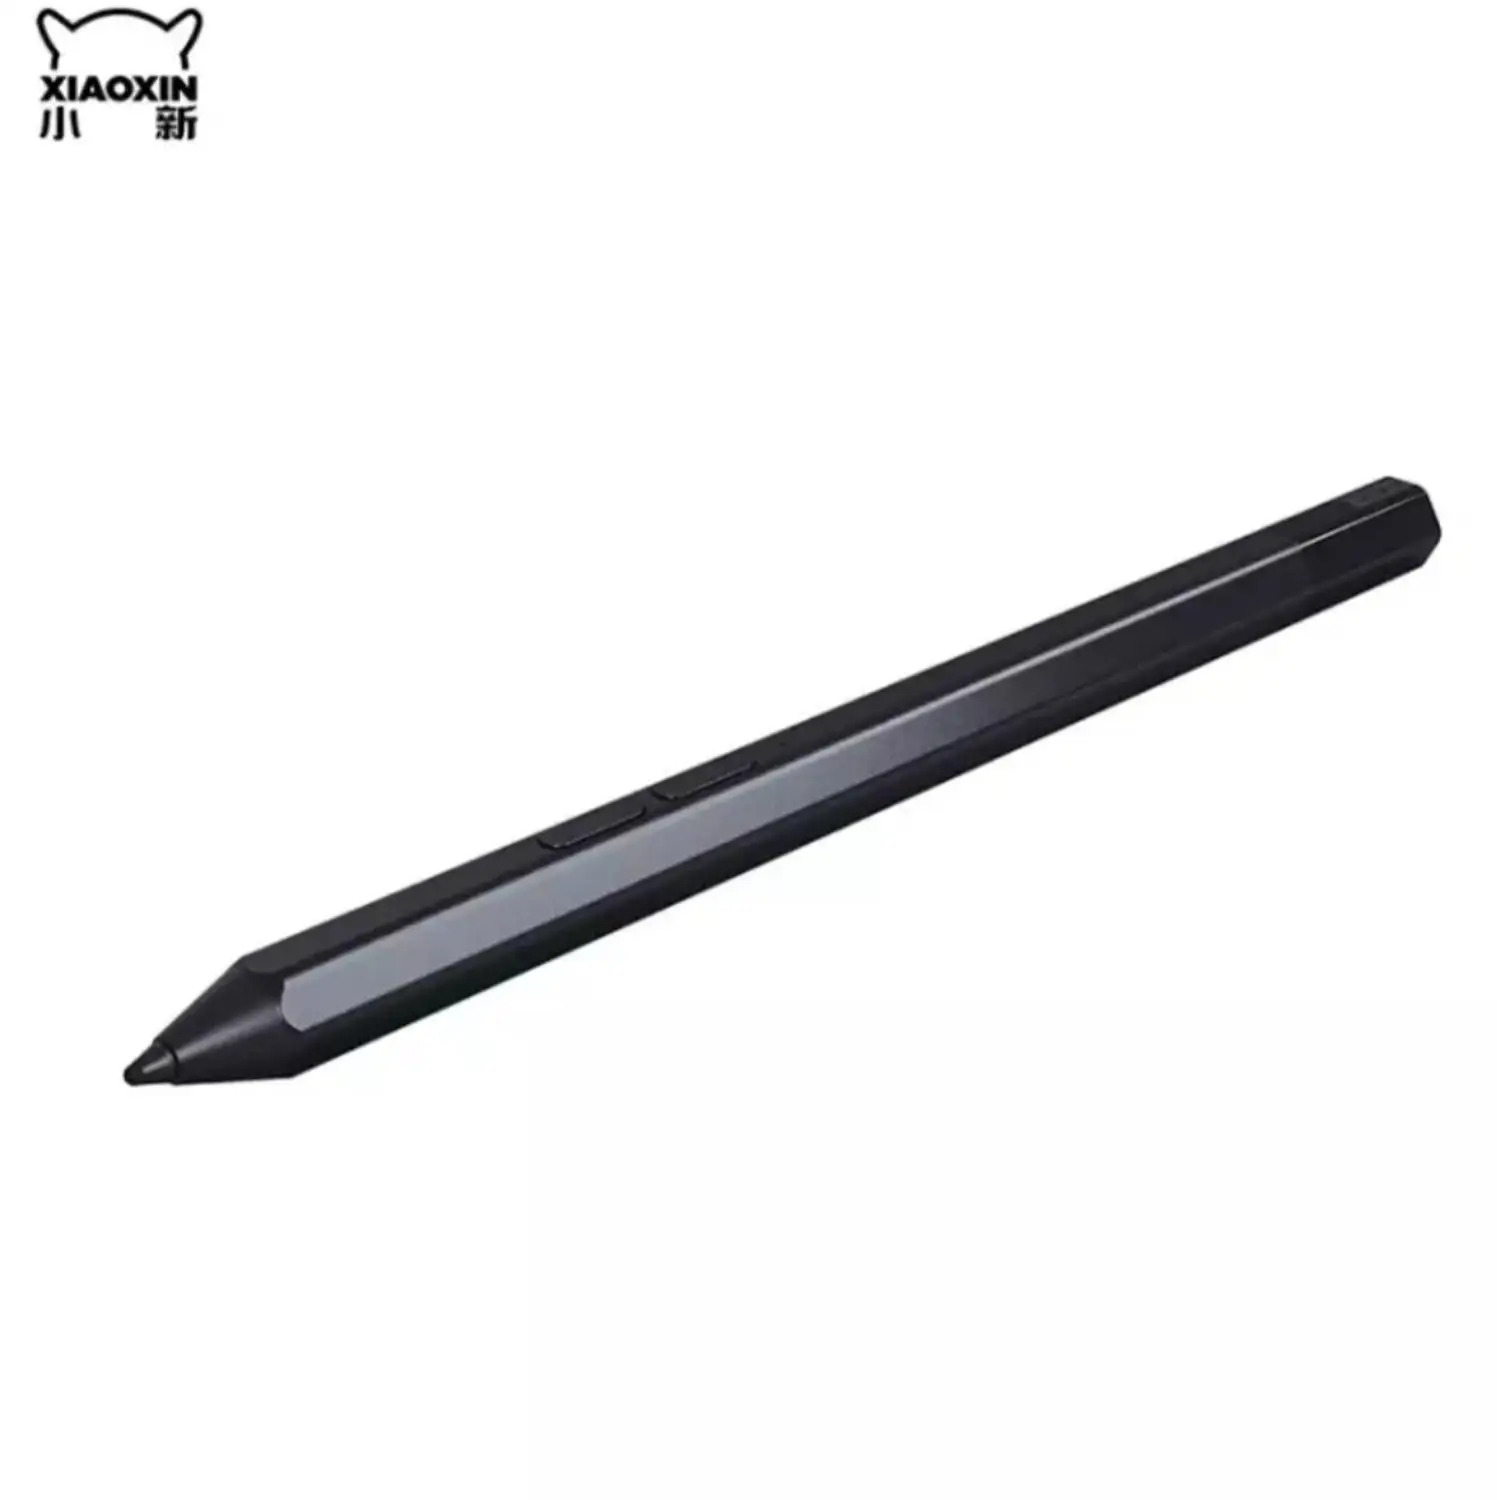 Lenovo оригинальный Стилус Для Xiaoxin pad/Xiaoxin Pro 4096 емкостная ручка